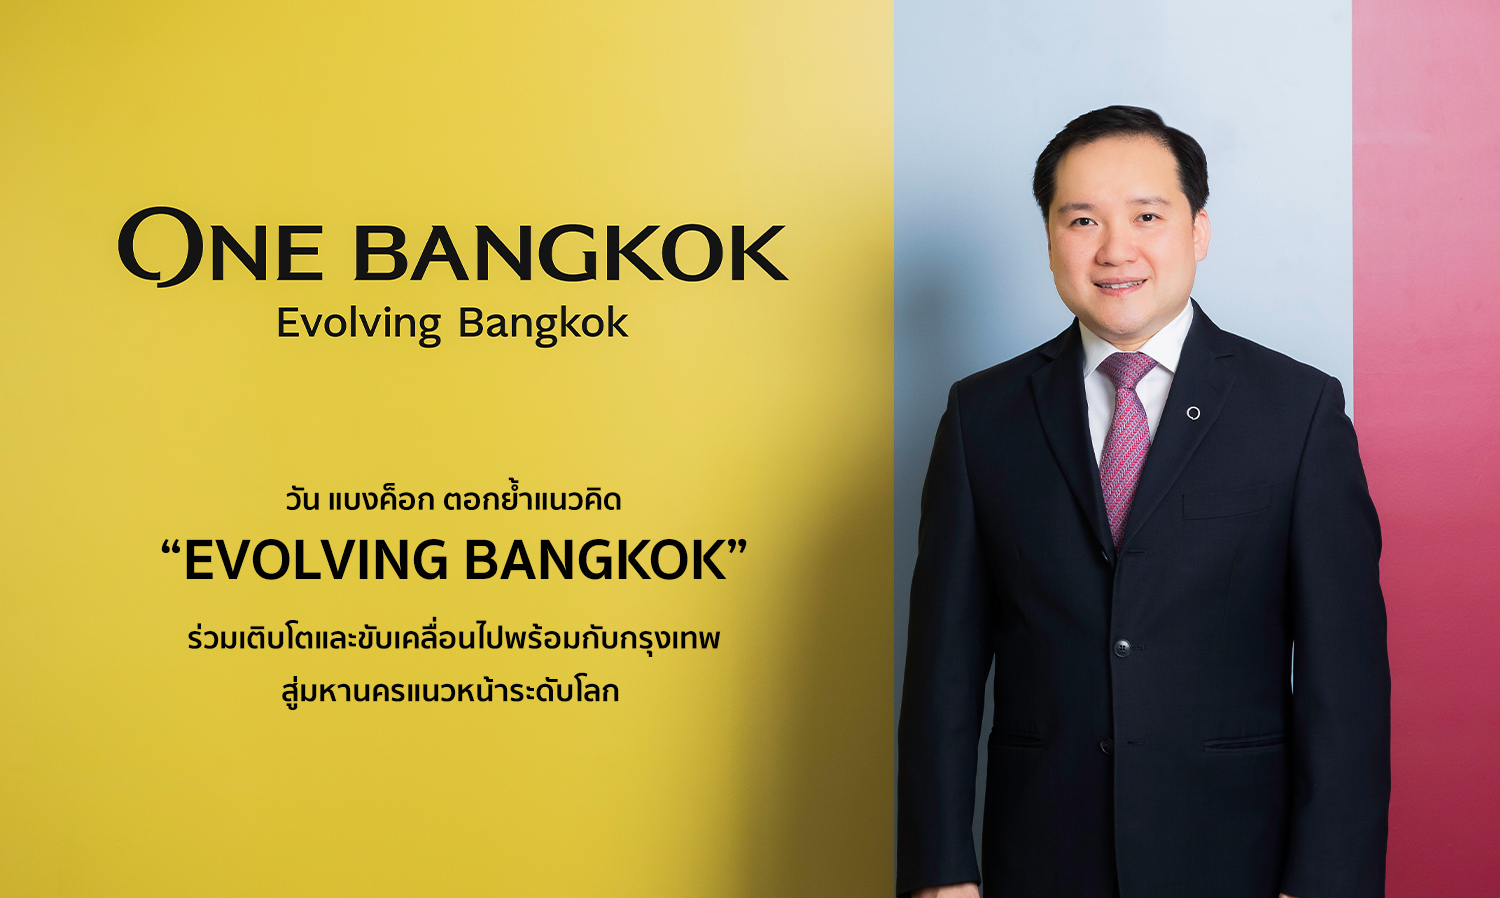 วัน แบงค็อก ตอกย้ำแนวคิด “Evolving Bangkok” ร่วมเติบโตและขับเคลื่อนไปพร้อมกับกรุงเทพ สู่มหานครแนวหน้าระดับโลก